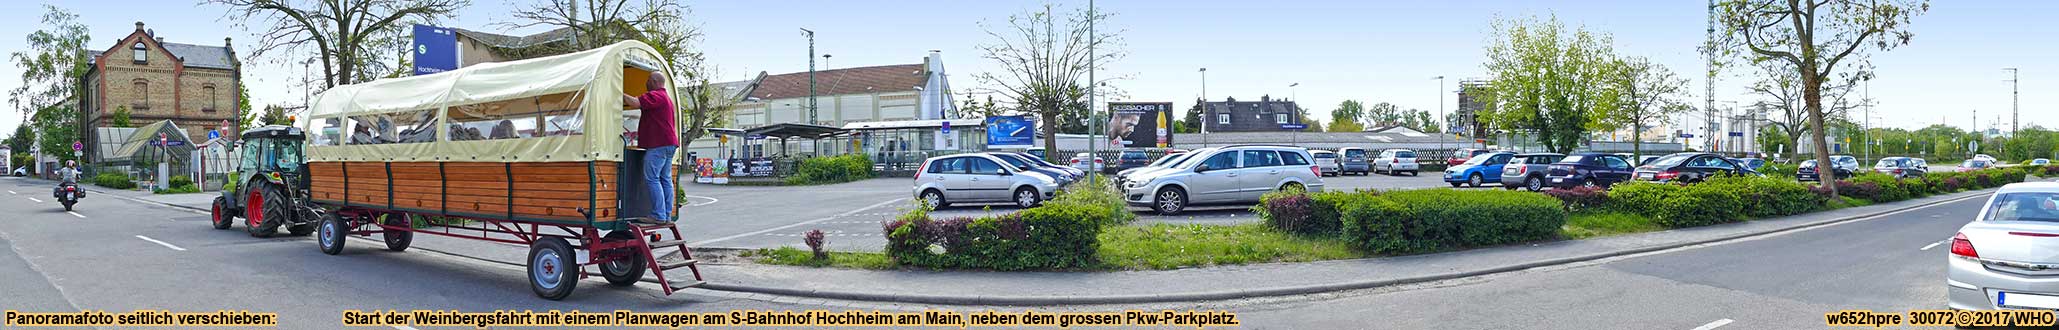 Start der Weinbergsfahrt mit einem Planwagen am S-Bahnhof Hochheim am Main, neben dem grossen Pkw-Parkplatz.